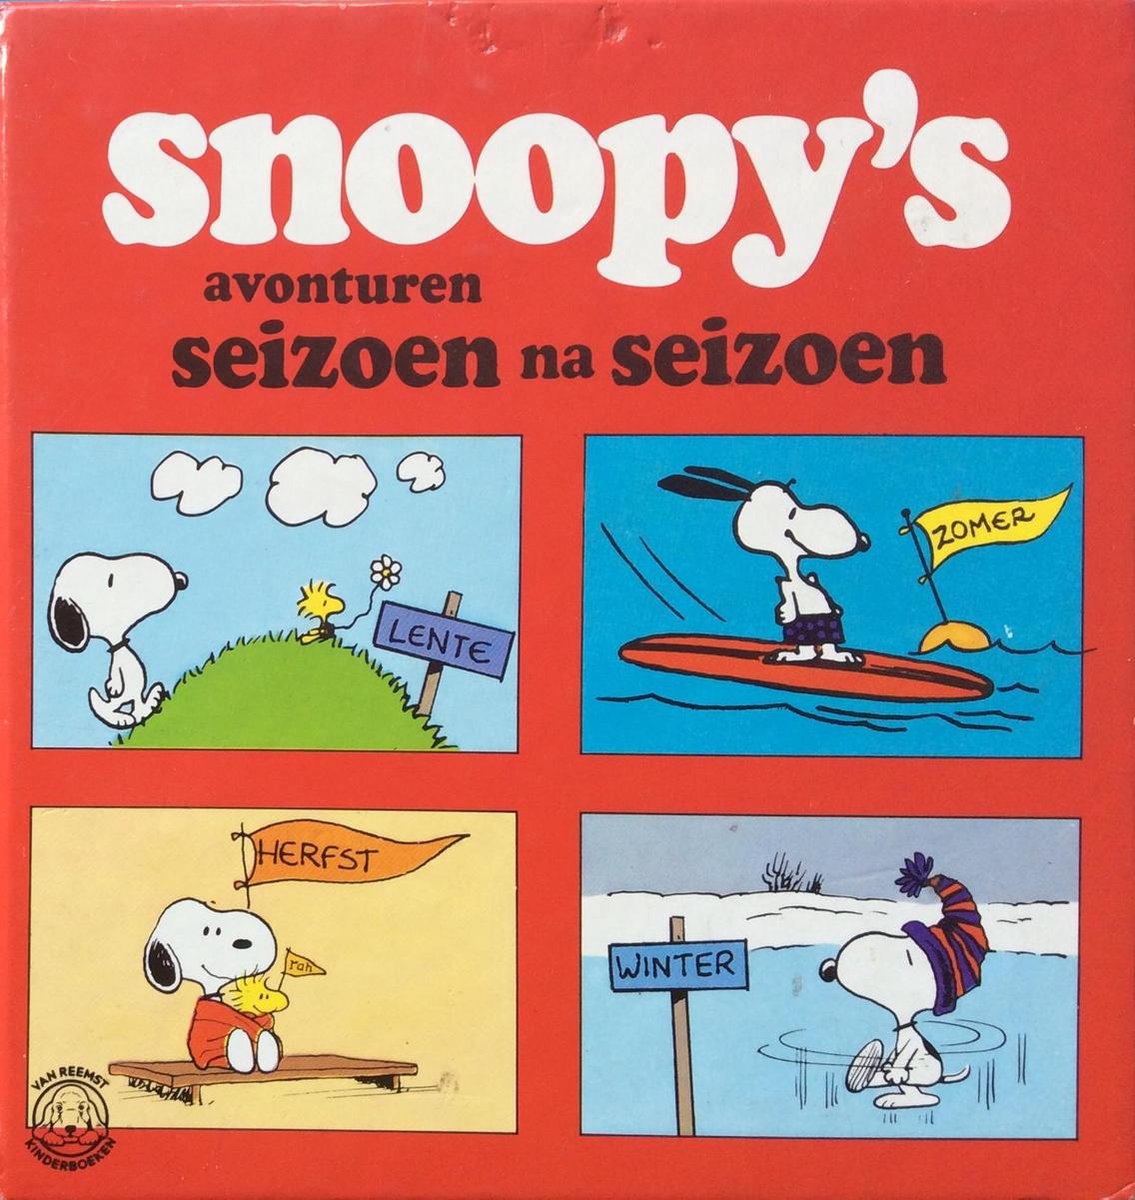 Snoopy s avonturen seizoen na seizoen